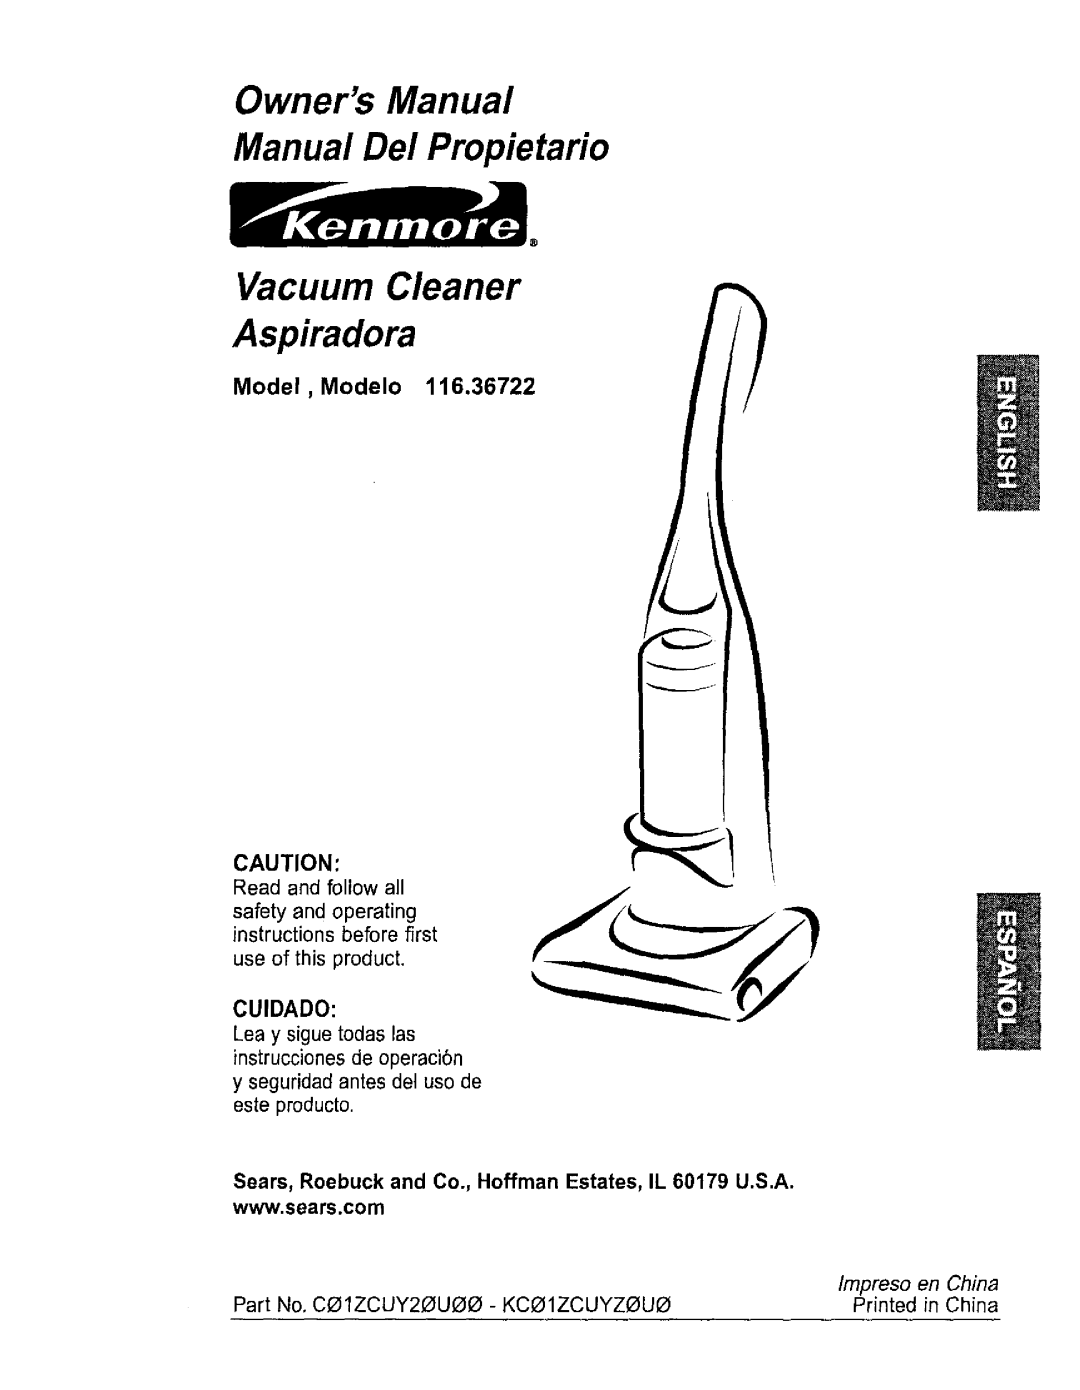 Kenmore 116.36722 owner manual Cuidado, Lea y sigue todas las instrucciones de operaci6n, Vacuum Cleaner Aspiradora 